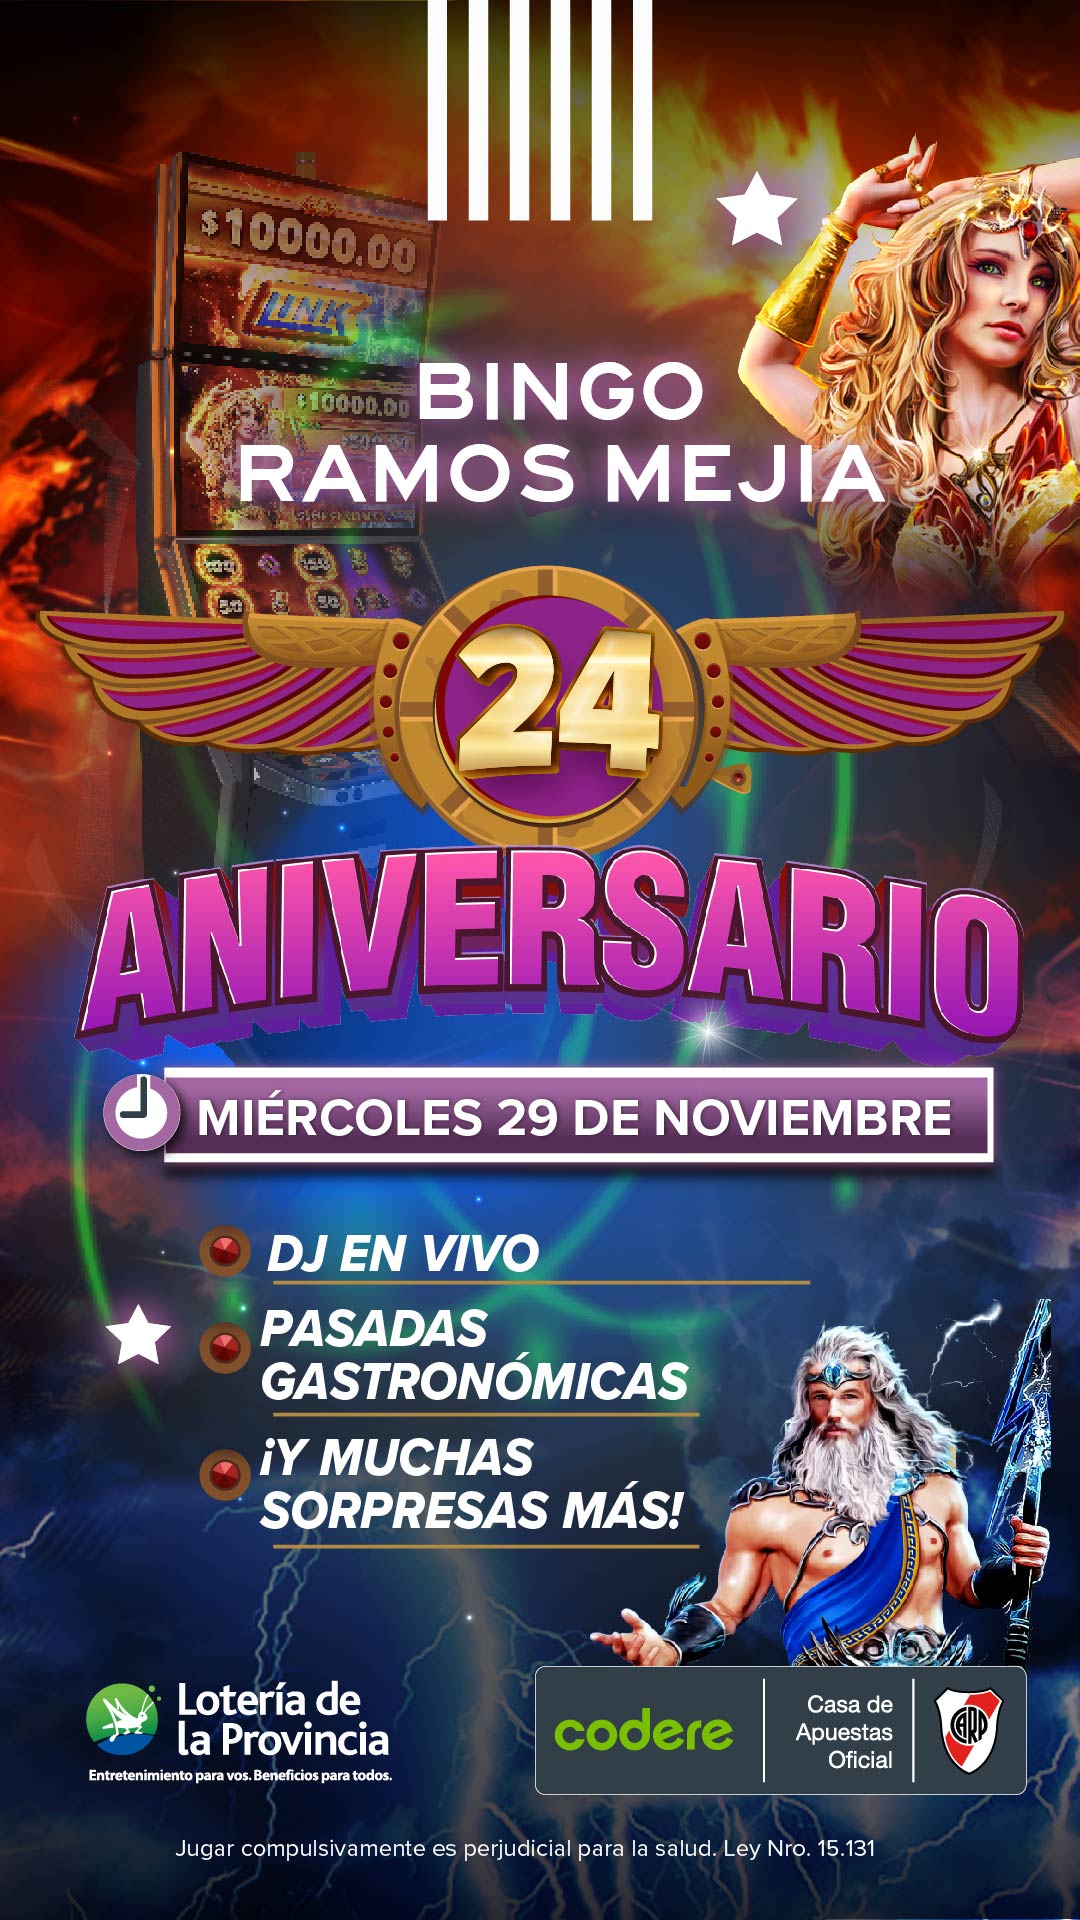 Aniversario Sala Ramos 24 Años